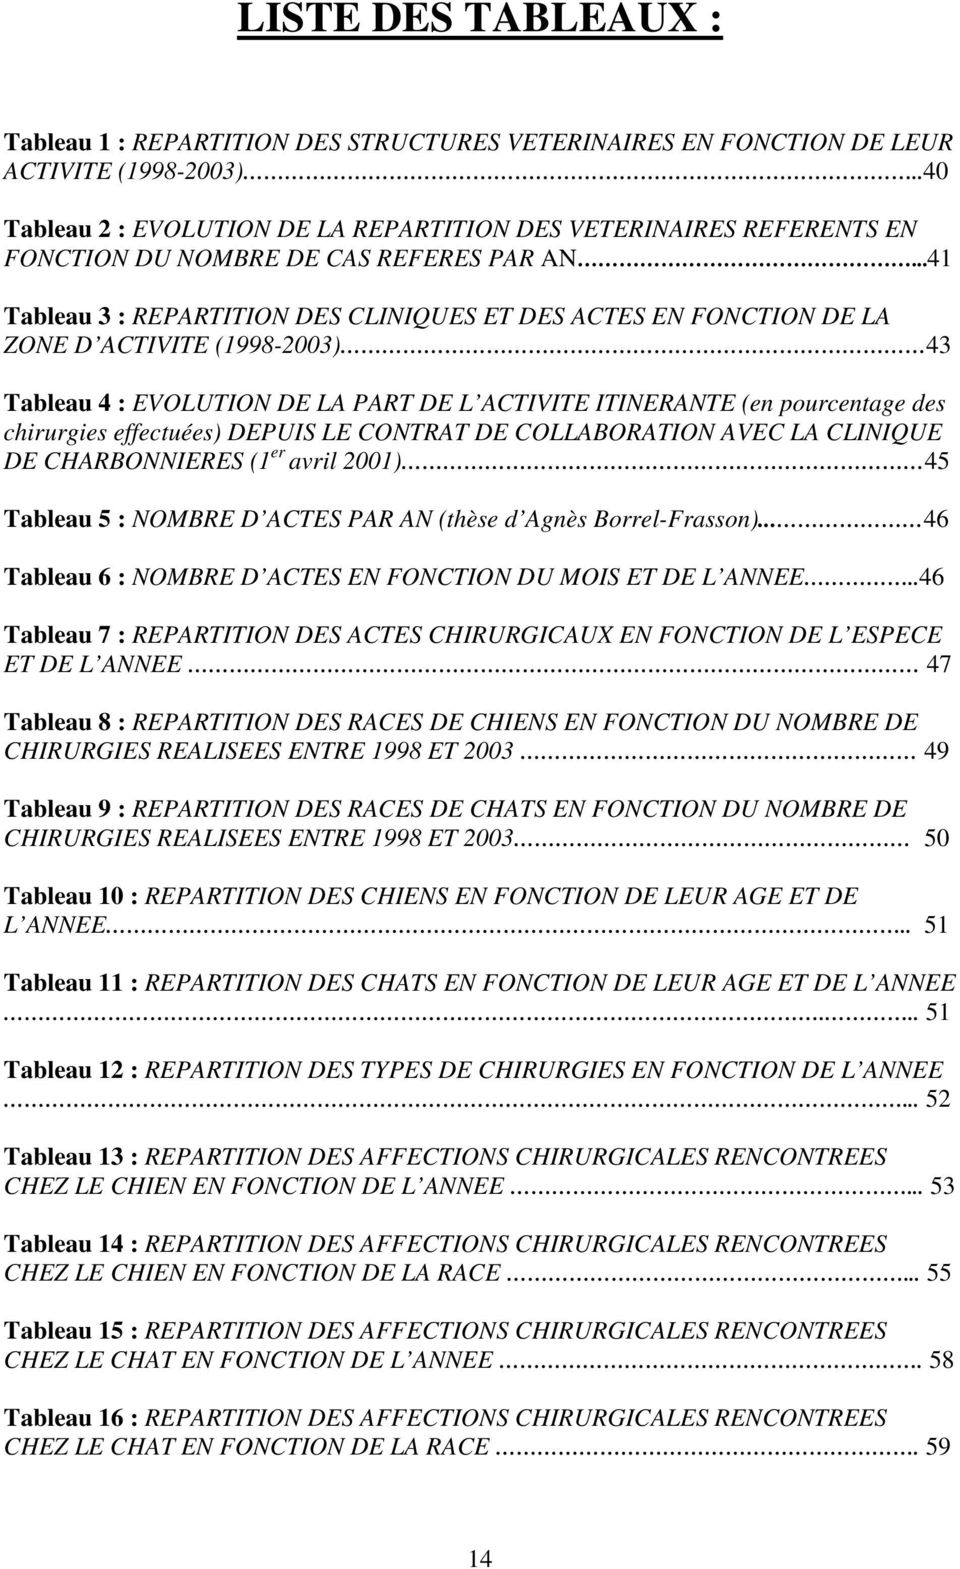 ..41 Tableau 3 : REPARTITION DES CLINIQUES ET DES ACTES EN FONCTION DE LA ZONE D ACTIVITE (1998-2003) 43 Tableau 4 : EVOLUTION DE LA PART DE L ACTIVITE ITINERANTE (en pourcentage des chirurgies